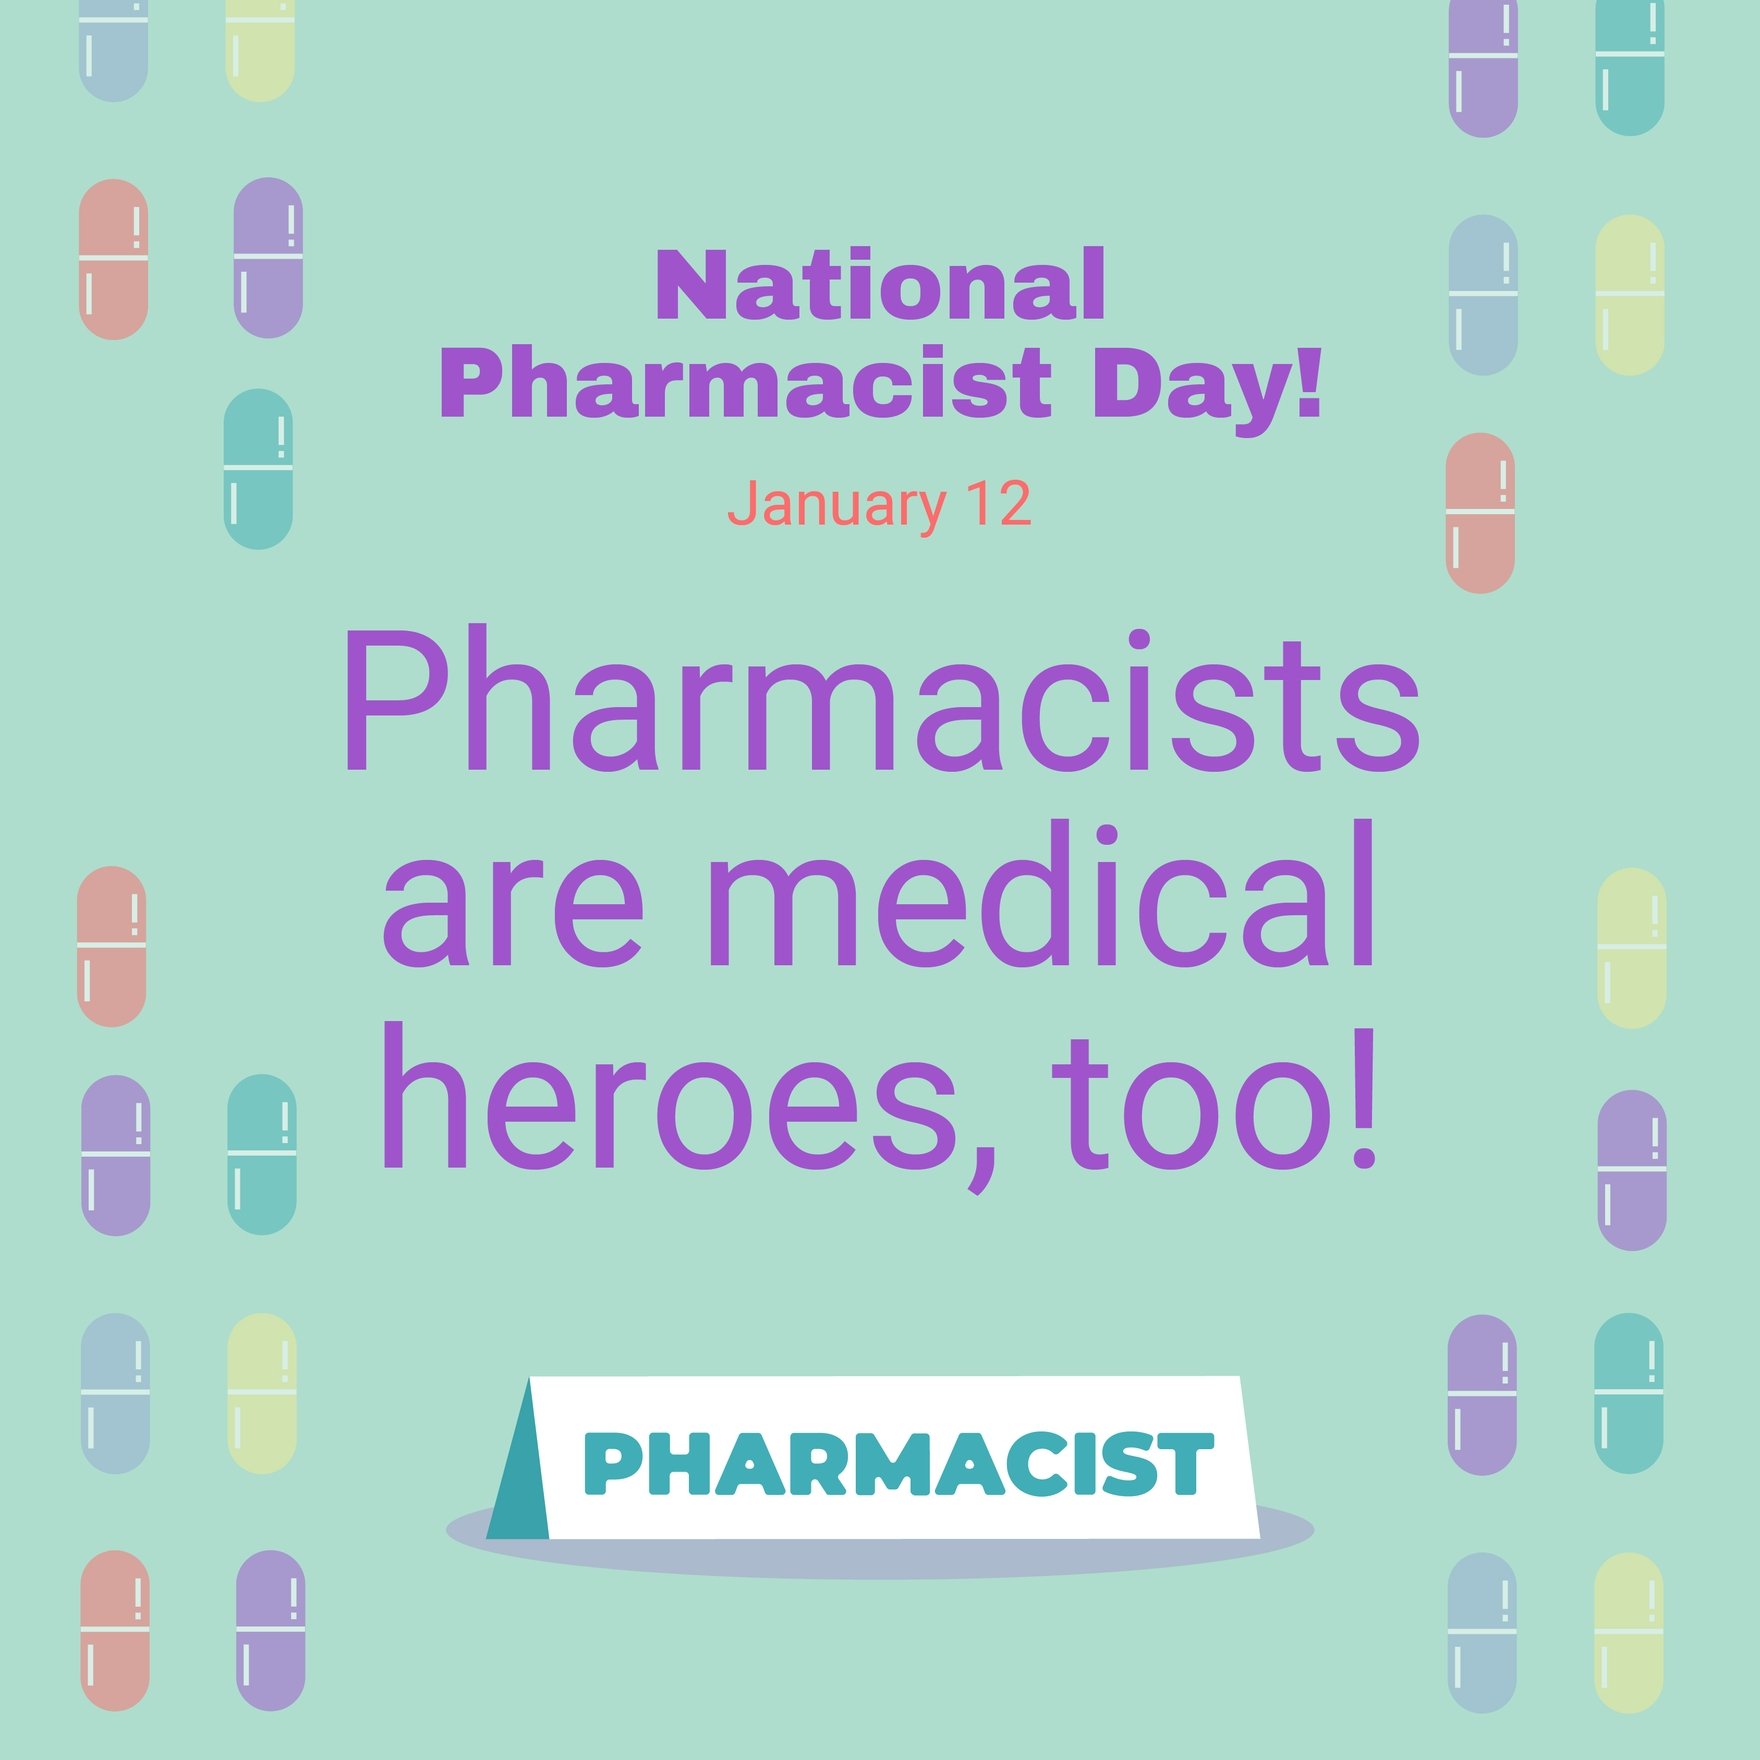 Free National Pharmacist Day Instagram Post in Illustrator, PSD, EPS, SVG, JPG, PNG